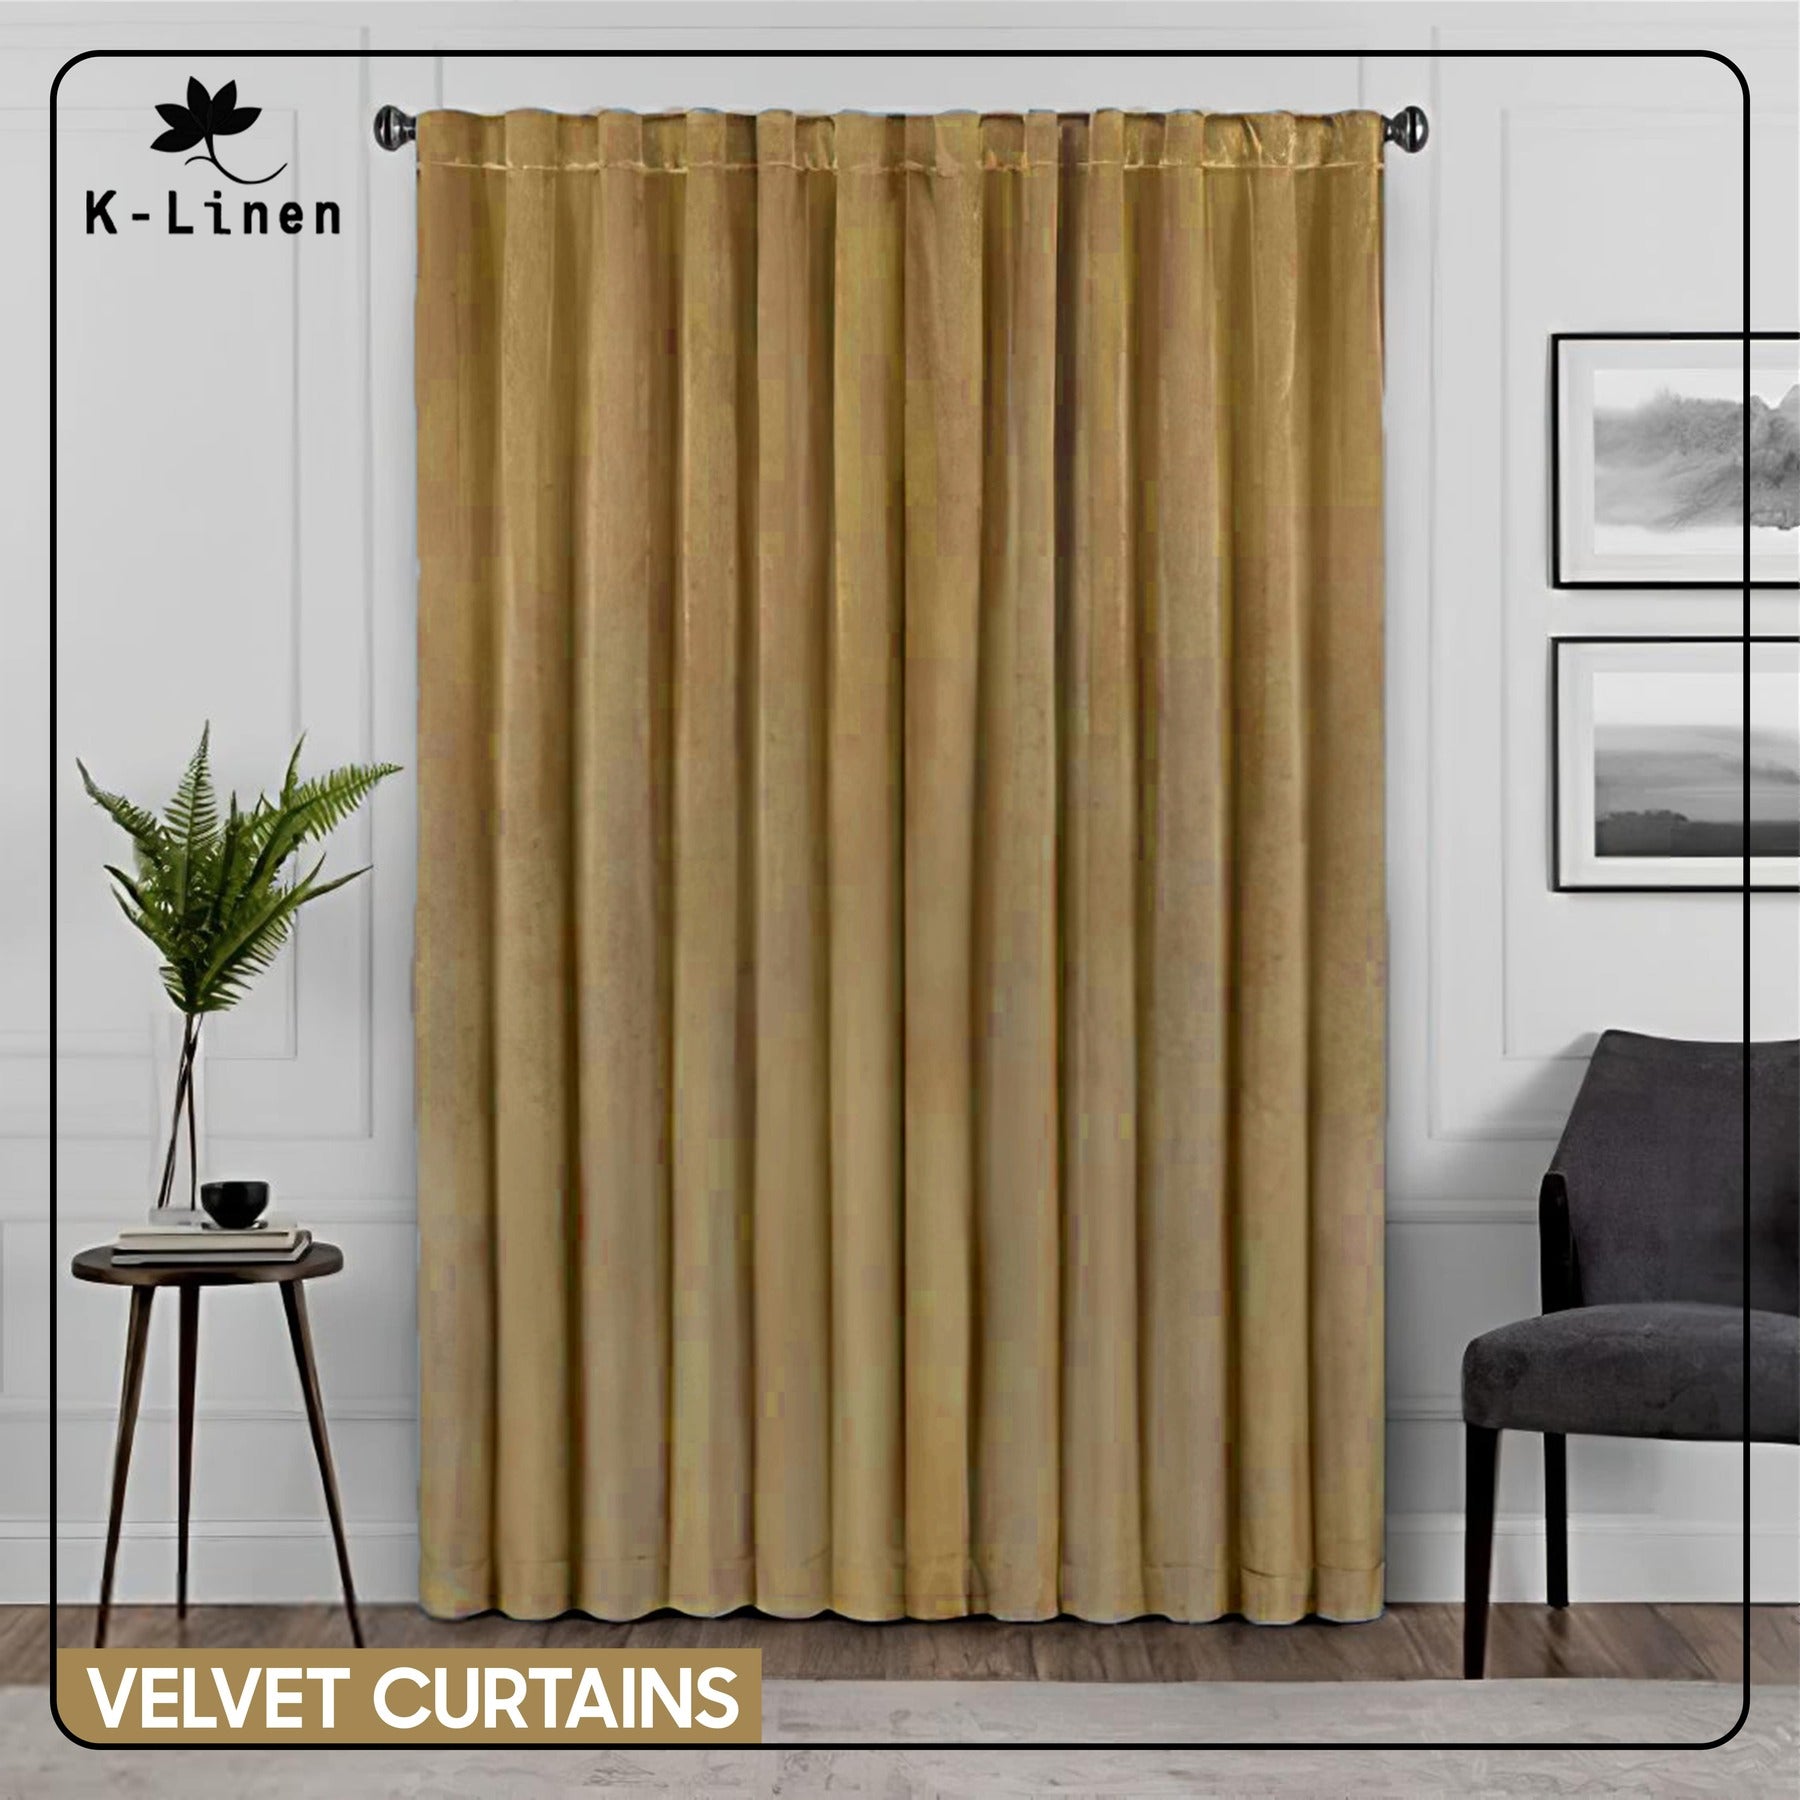 Premium Velvet Curtain - Golden/Beige